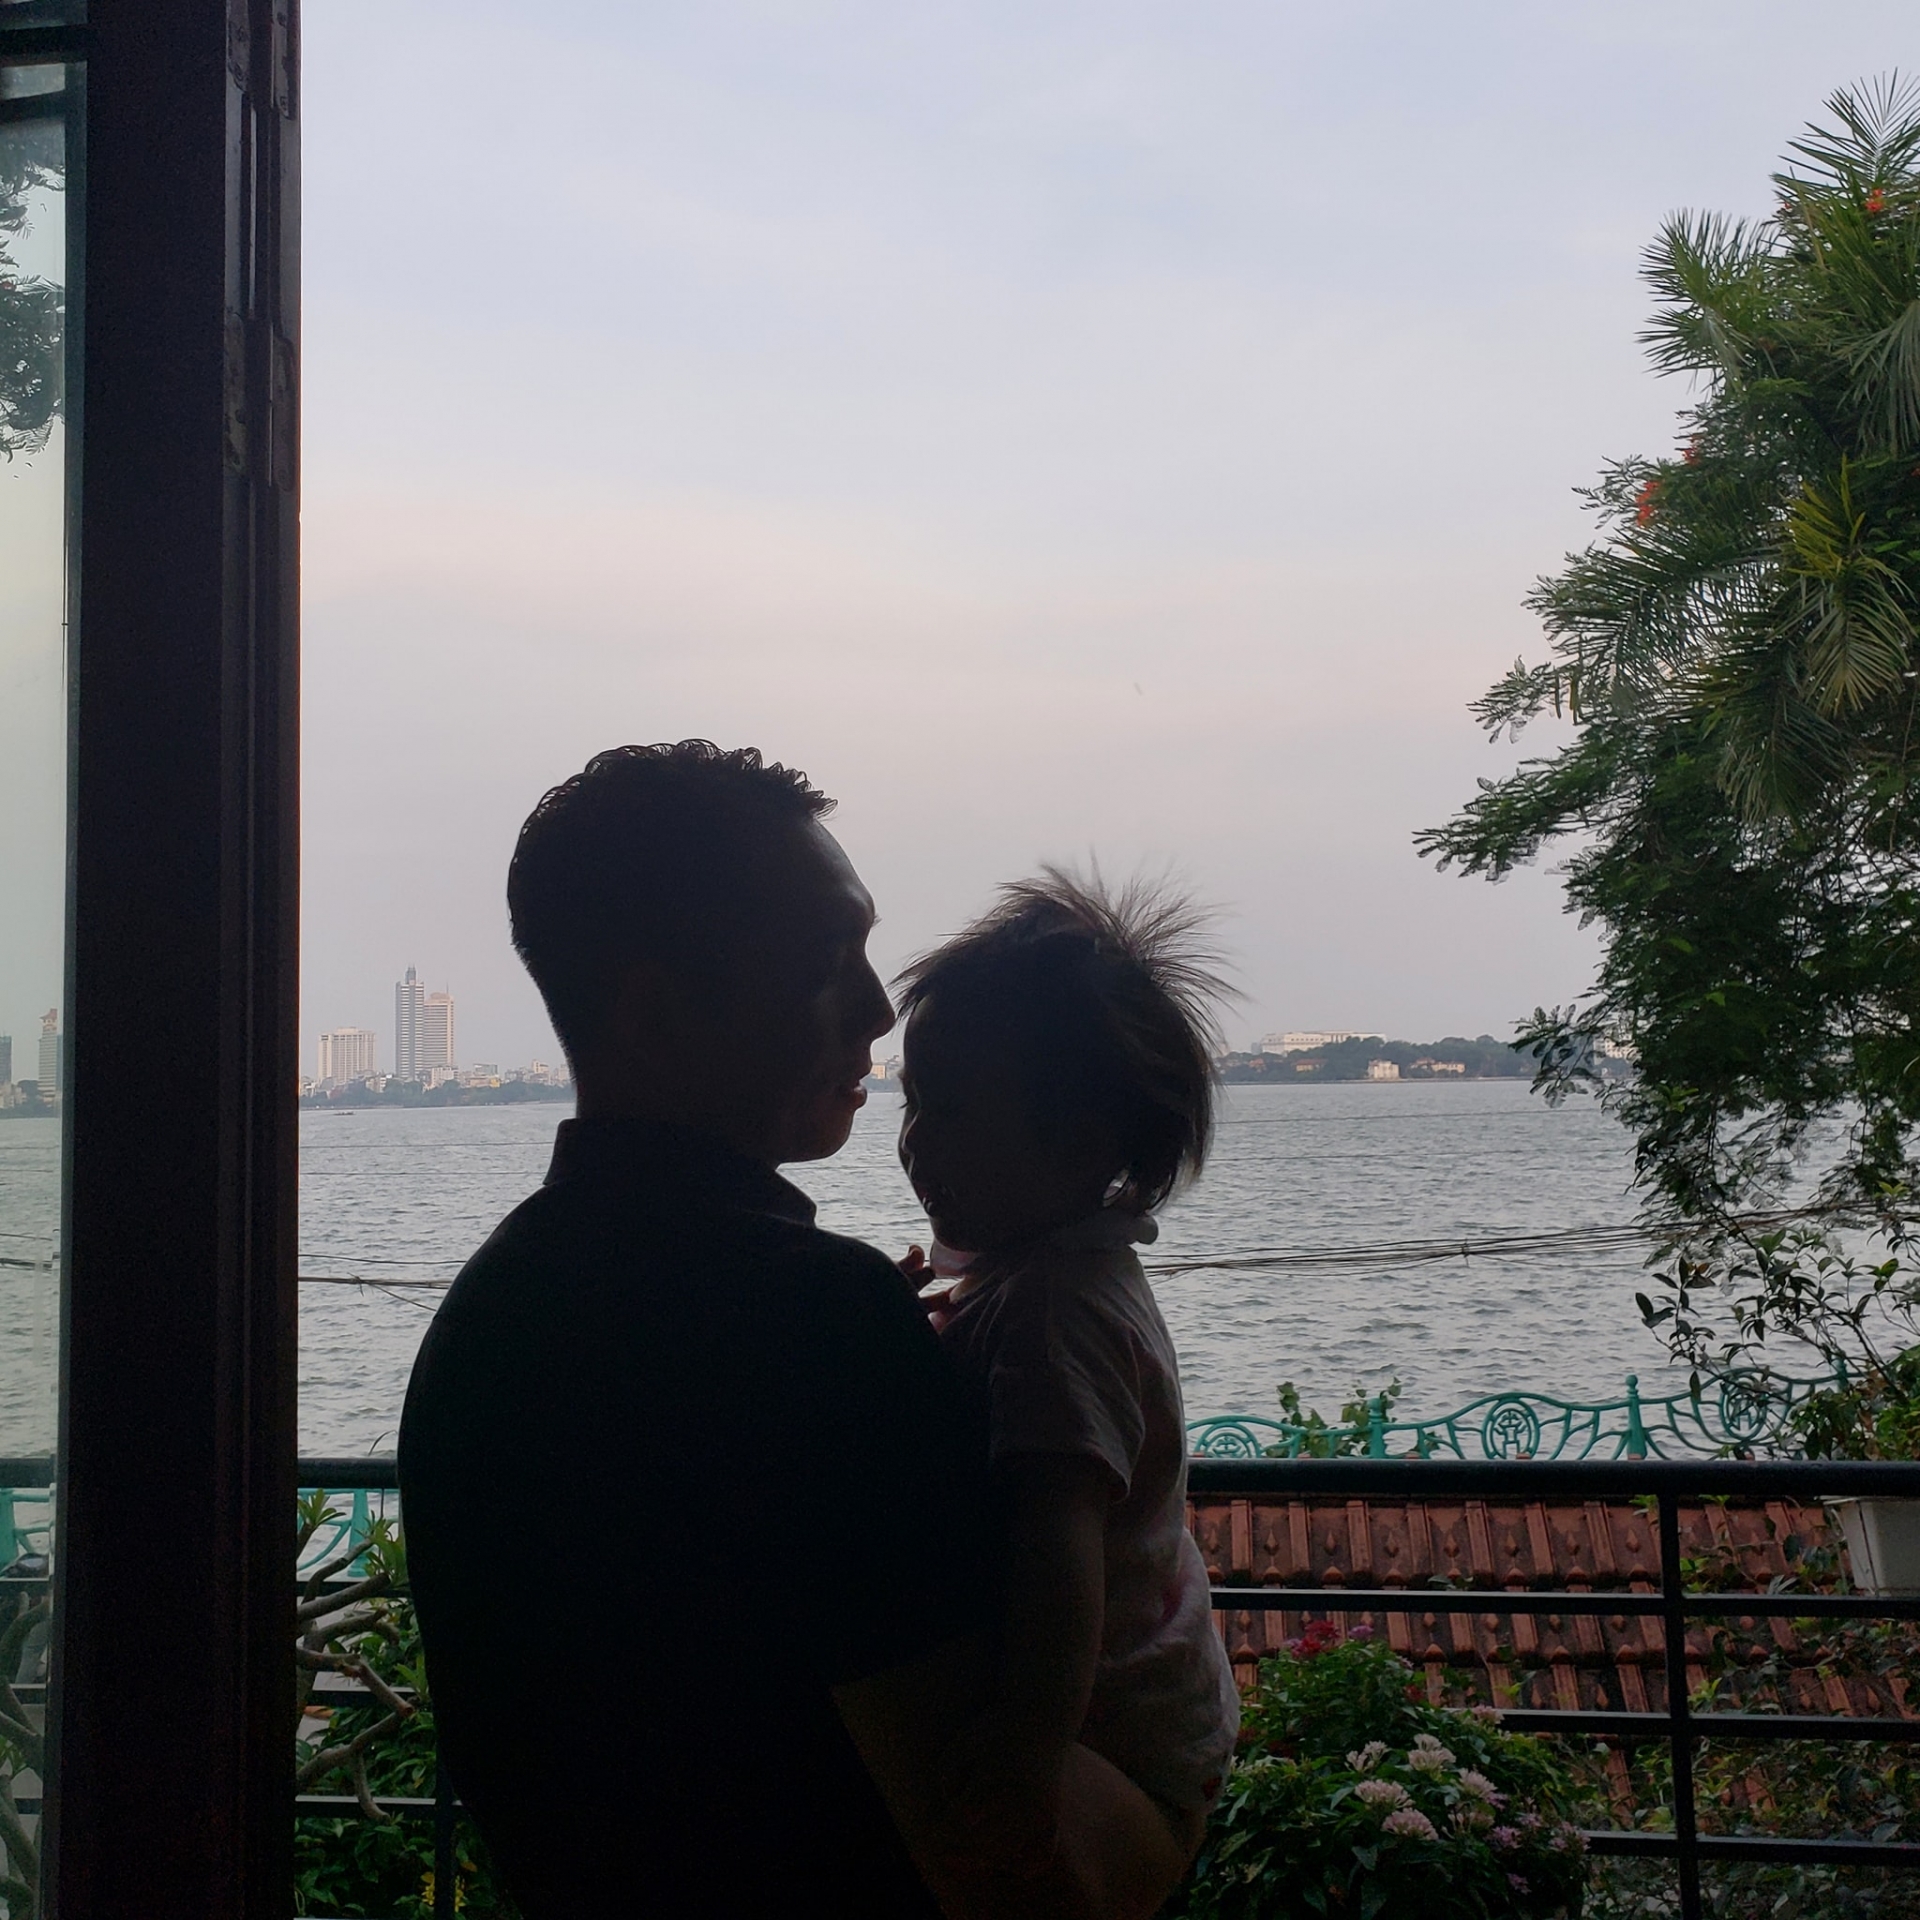 Căn biệt thự của gia đình Tú Linh nằm ở khu nhà giàu của Hà Nội, chẳng những thế nhà Tú Linh còn sở hữu góc view trong mơ khi nhìn thẳng ra Hồ Tây.